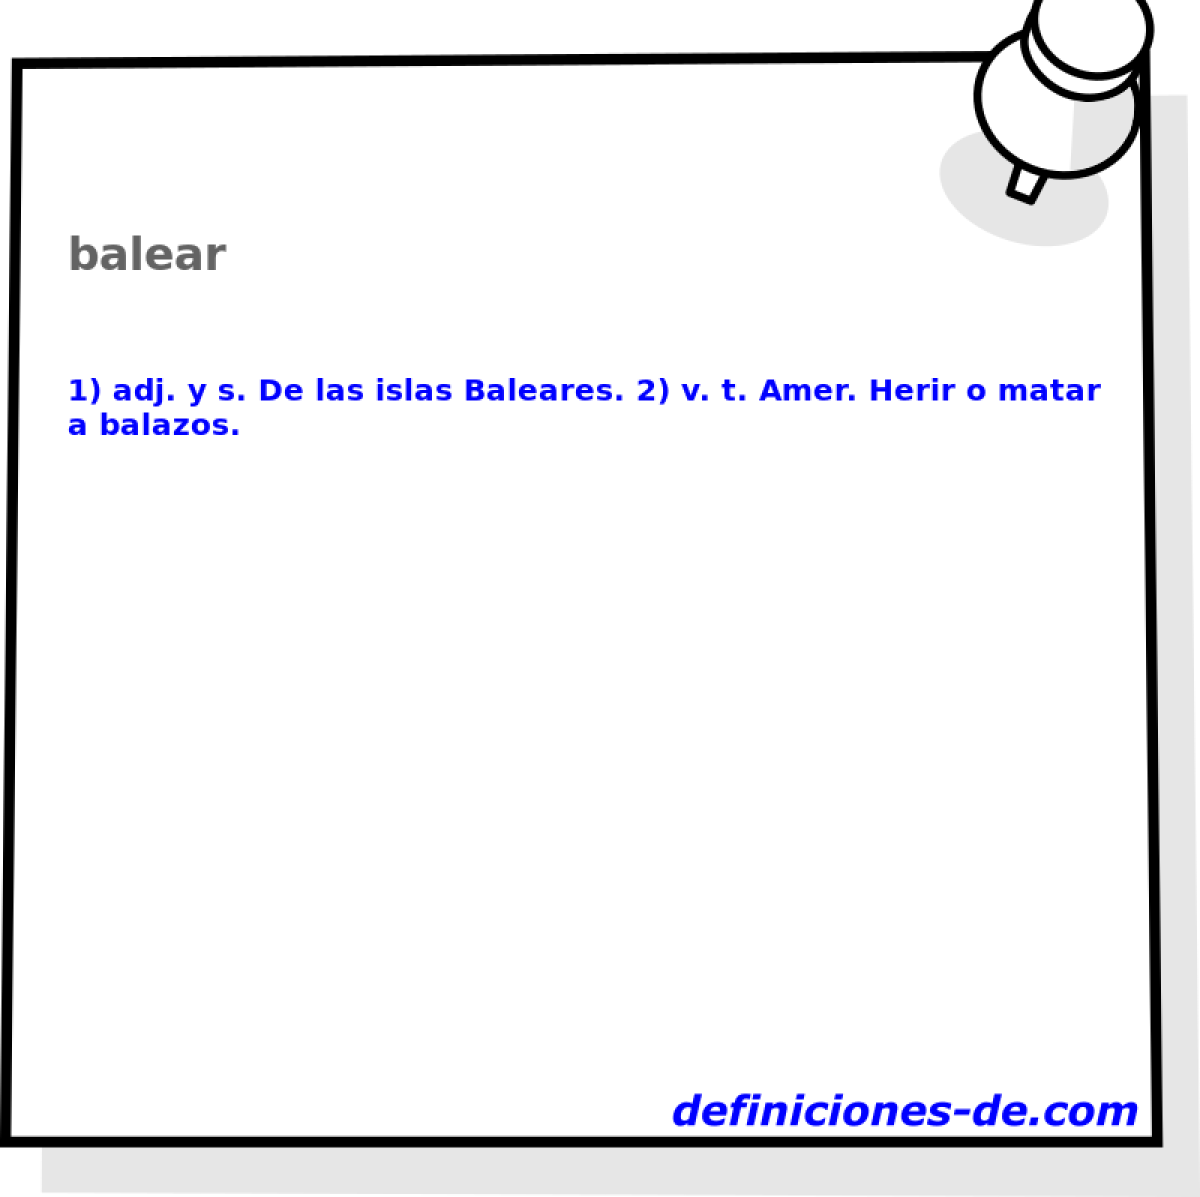 balear 